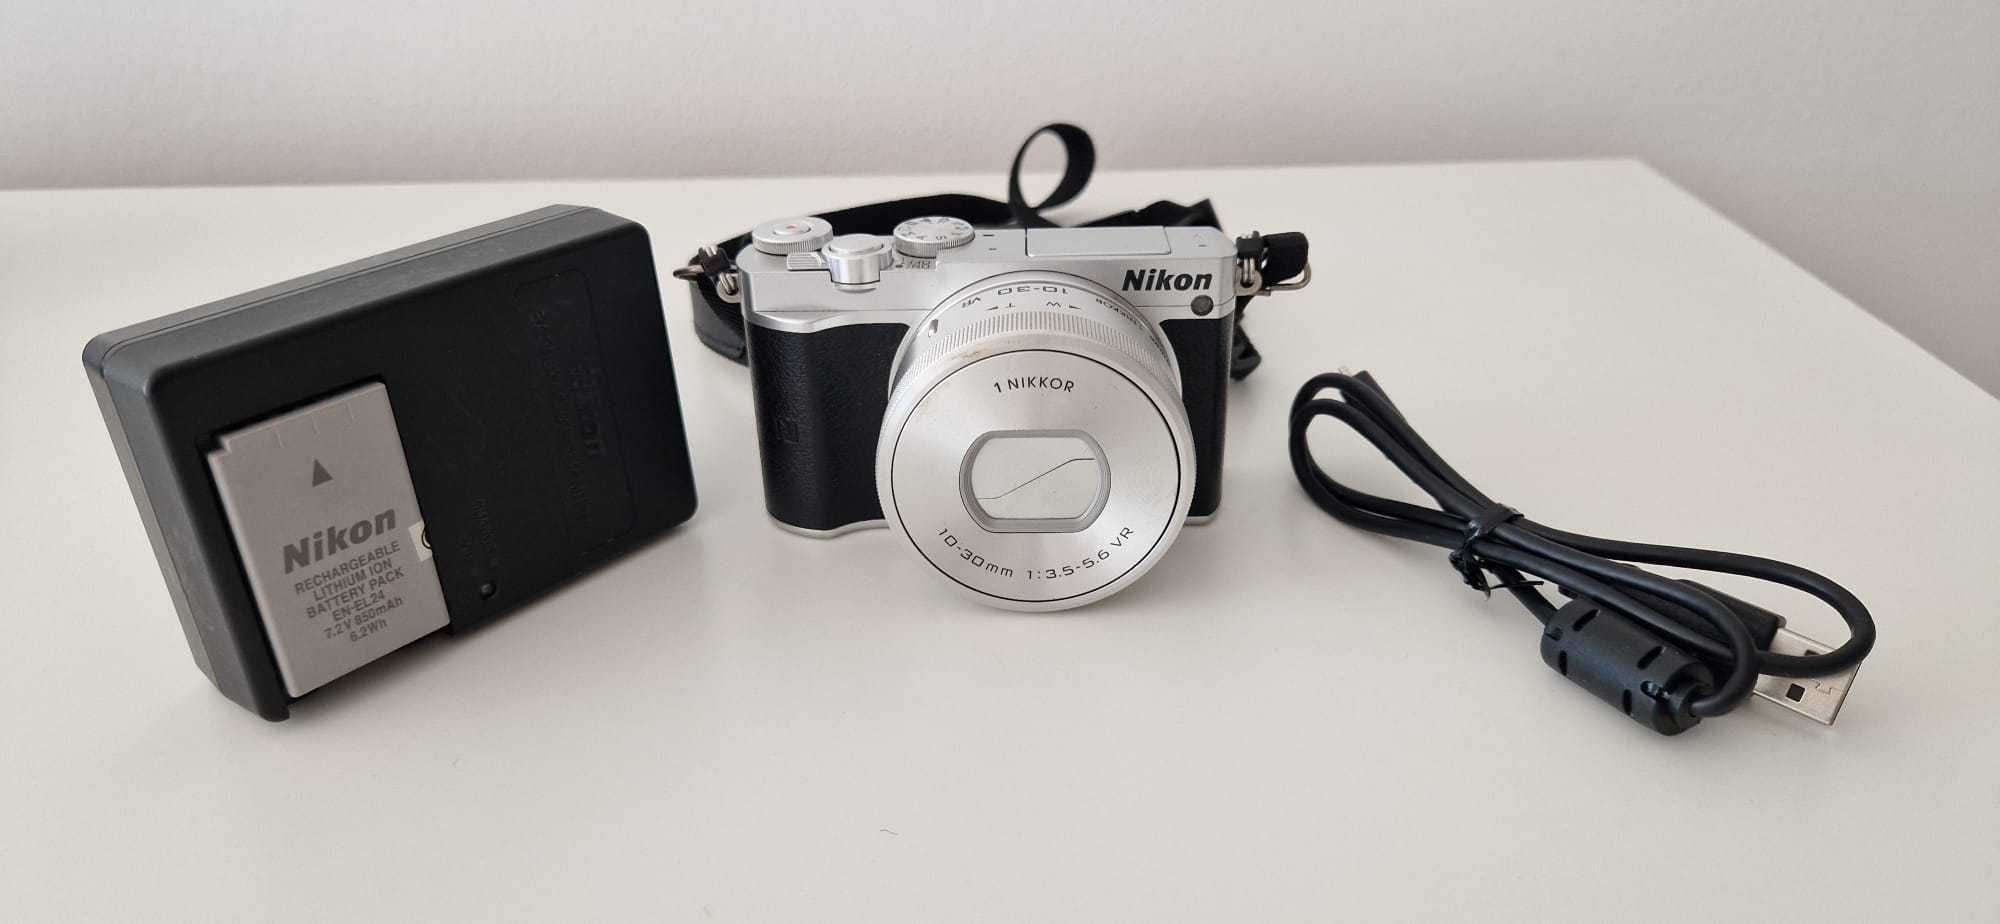 Camera foto Nikon 1 J5, Obiectiv 1 Nikkor 10-30 mm VR, PD-Zoom